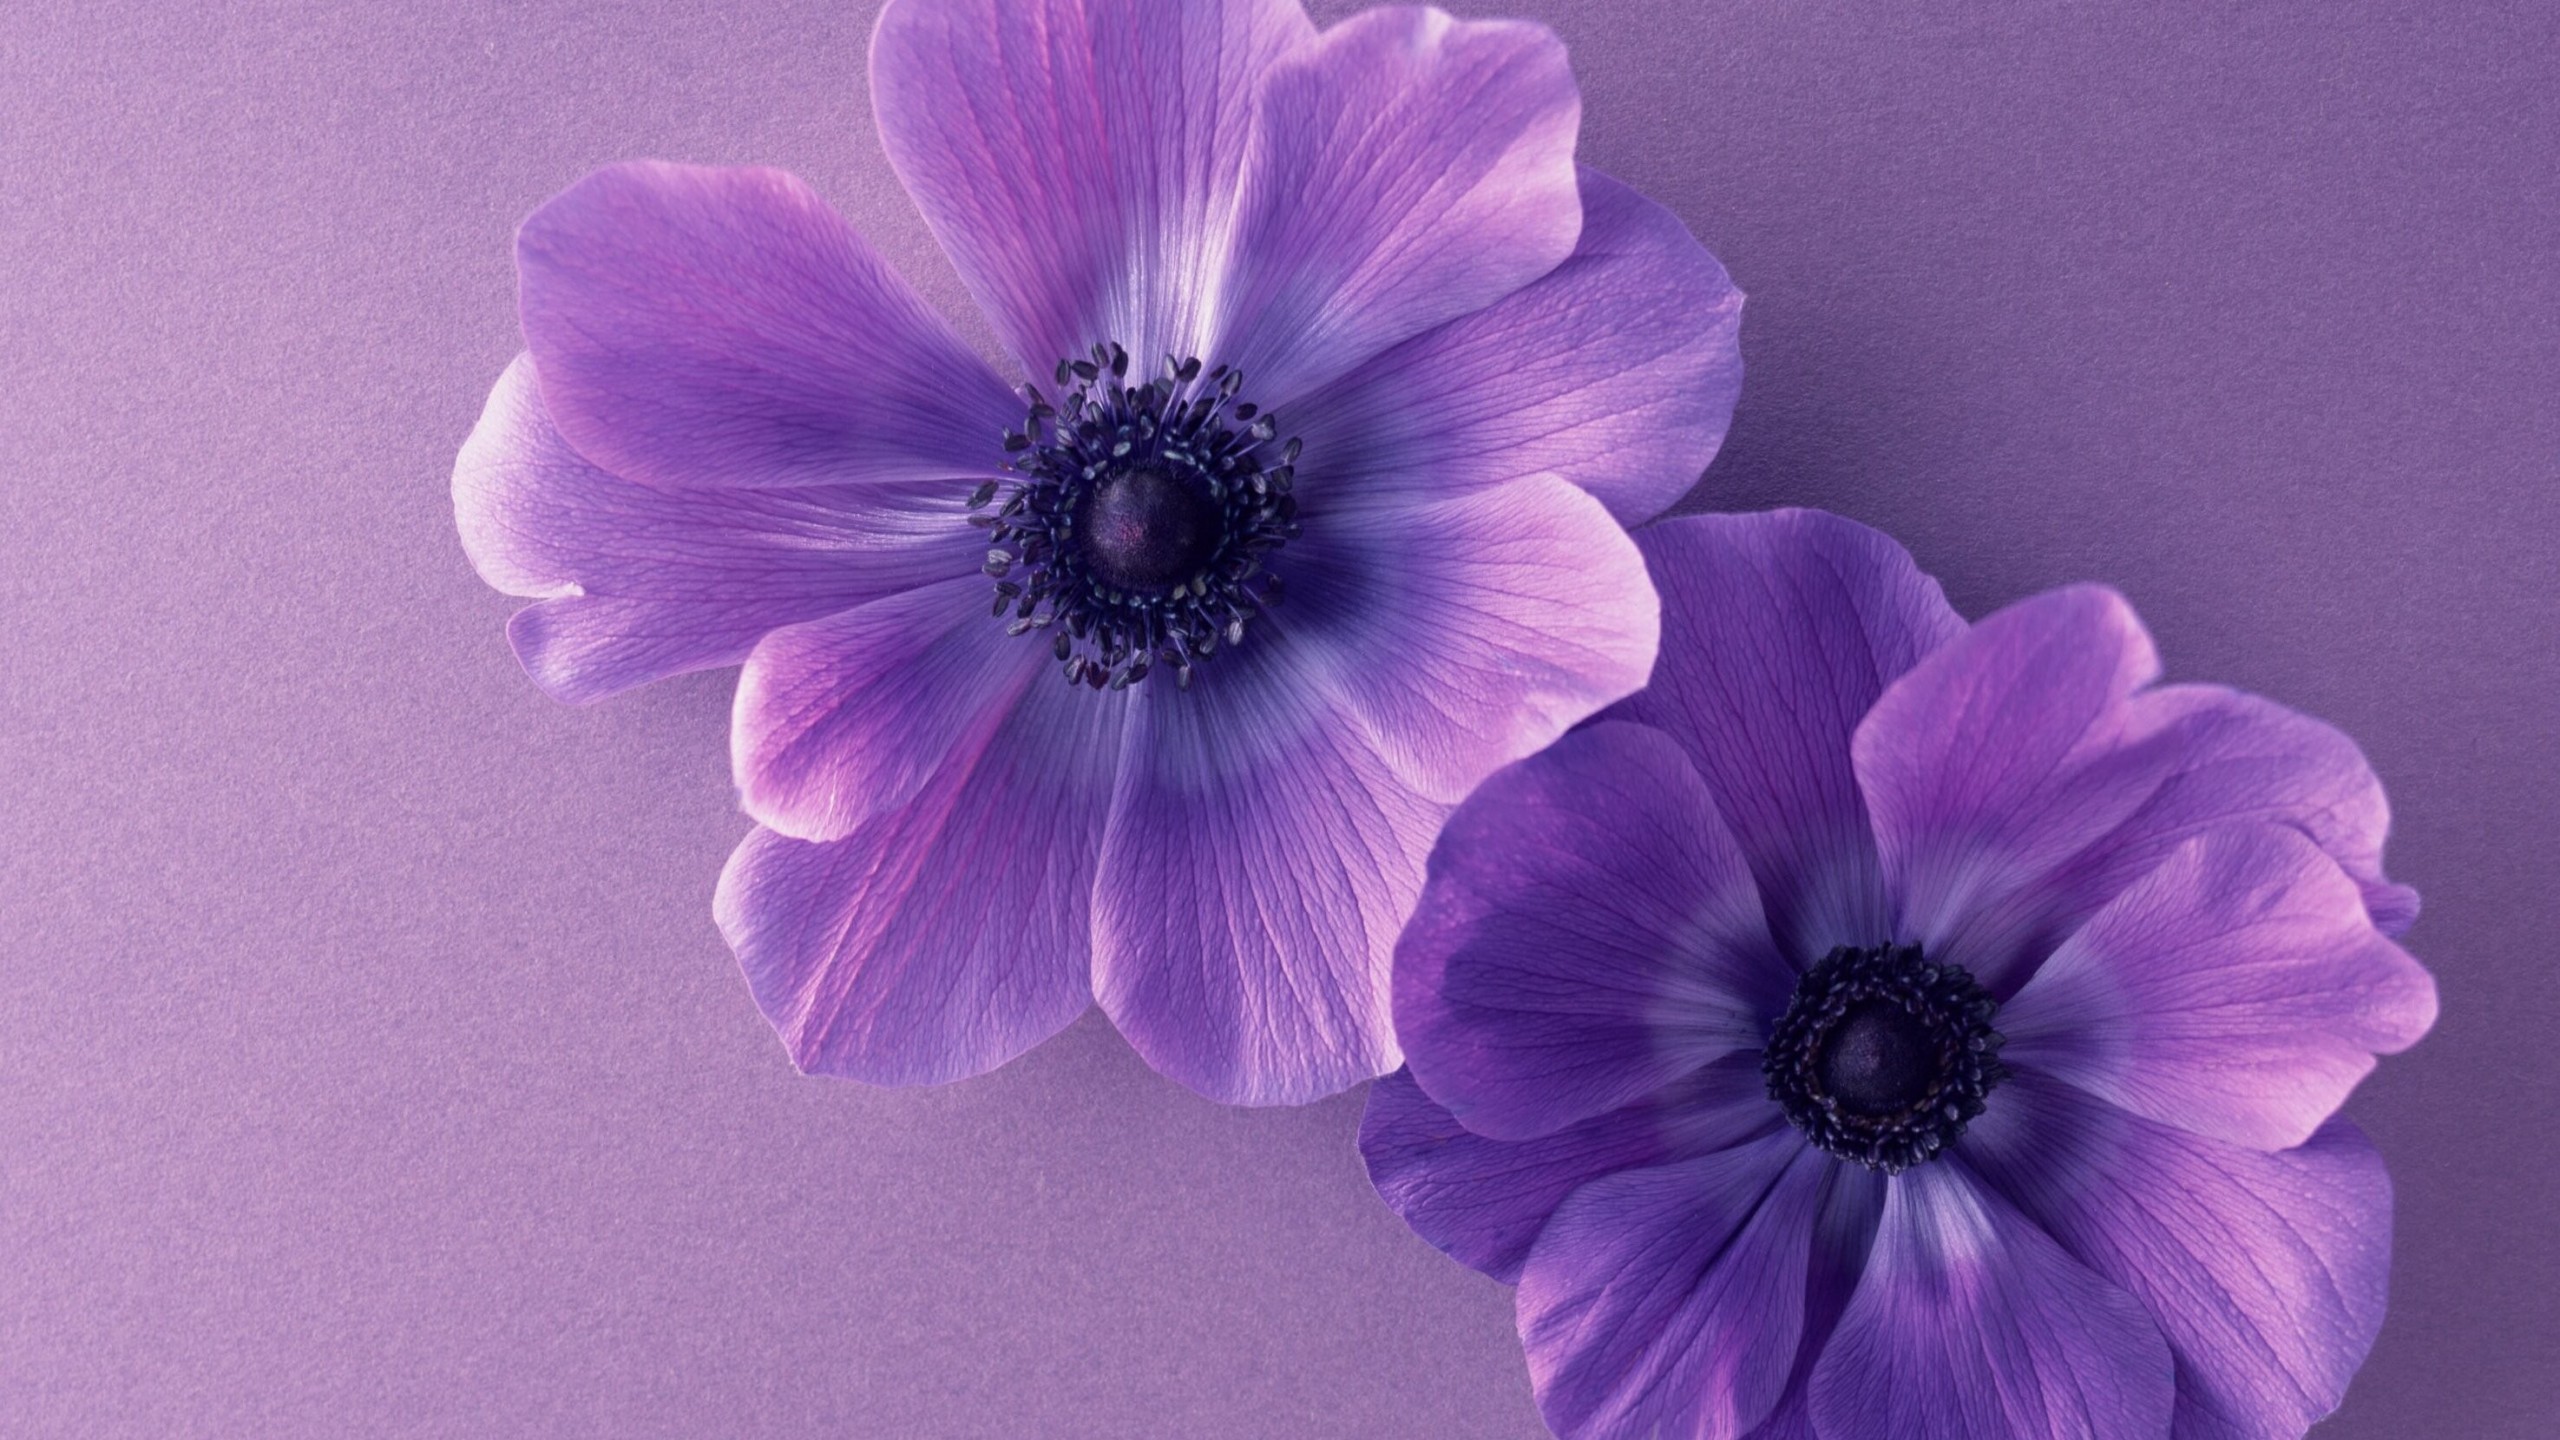 Flowers / Purple Flowers Wallpaper , HD Wallpaper & Backgrounds